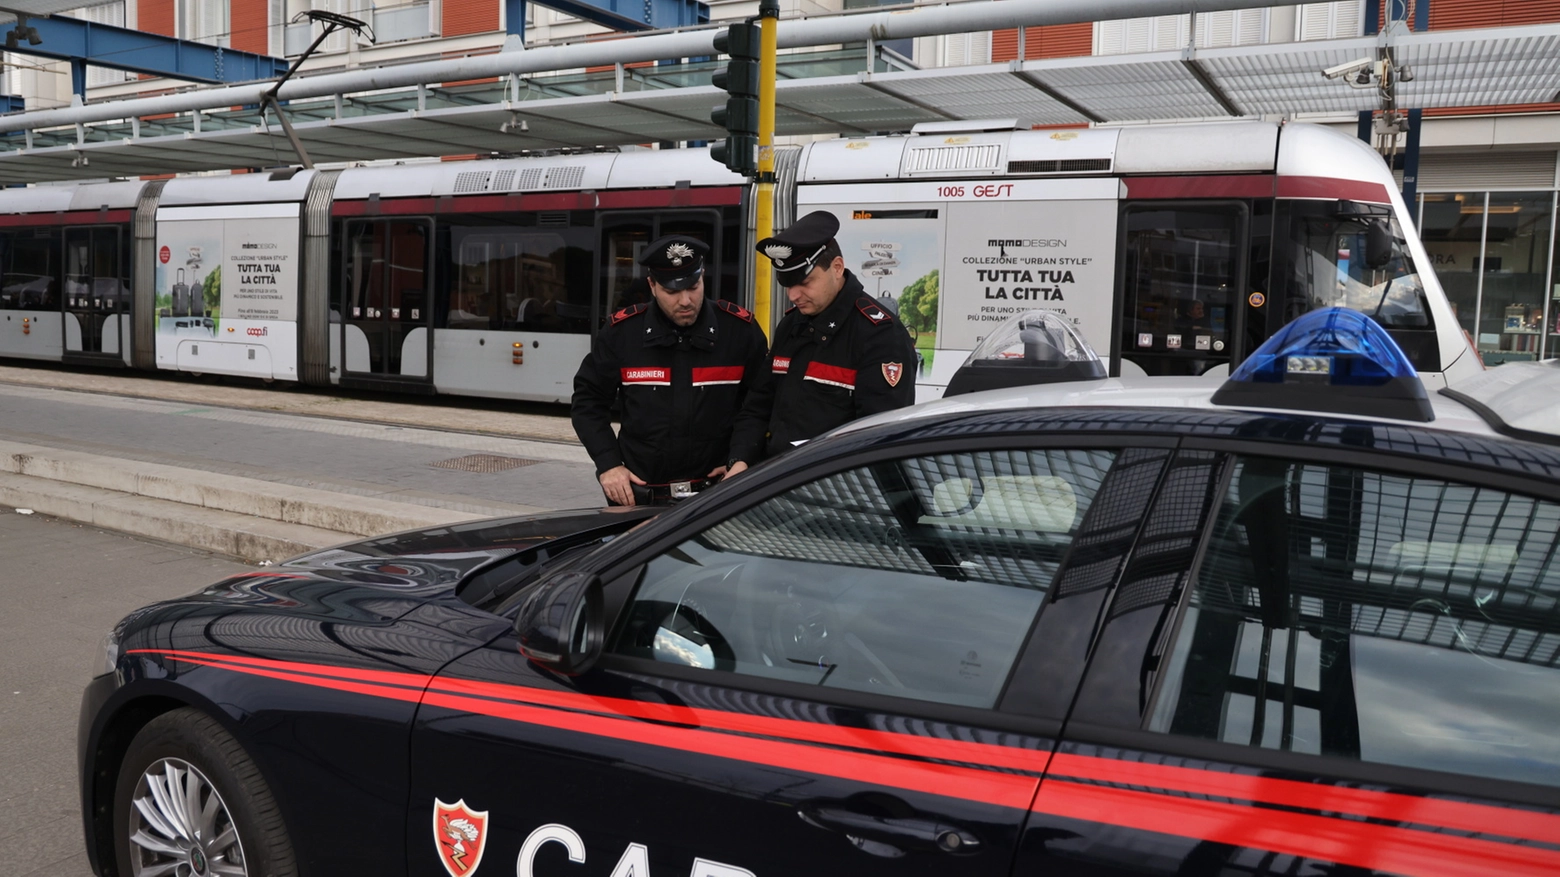 L'episodio è stato denunciato ai carabinieri che stanno indagando per risalire ai responsabili della rapina